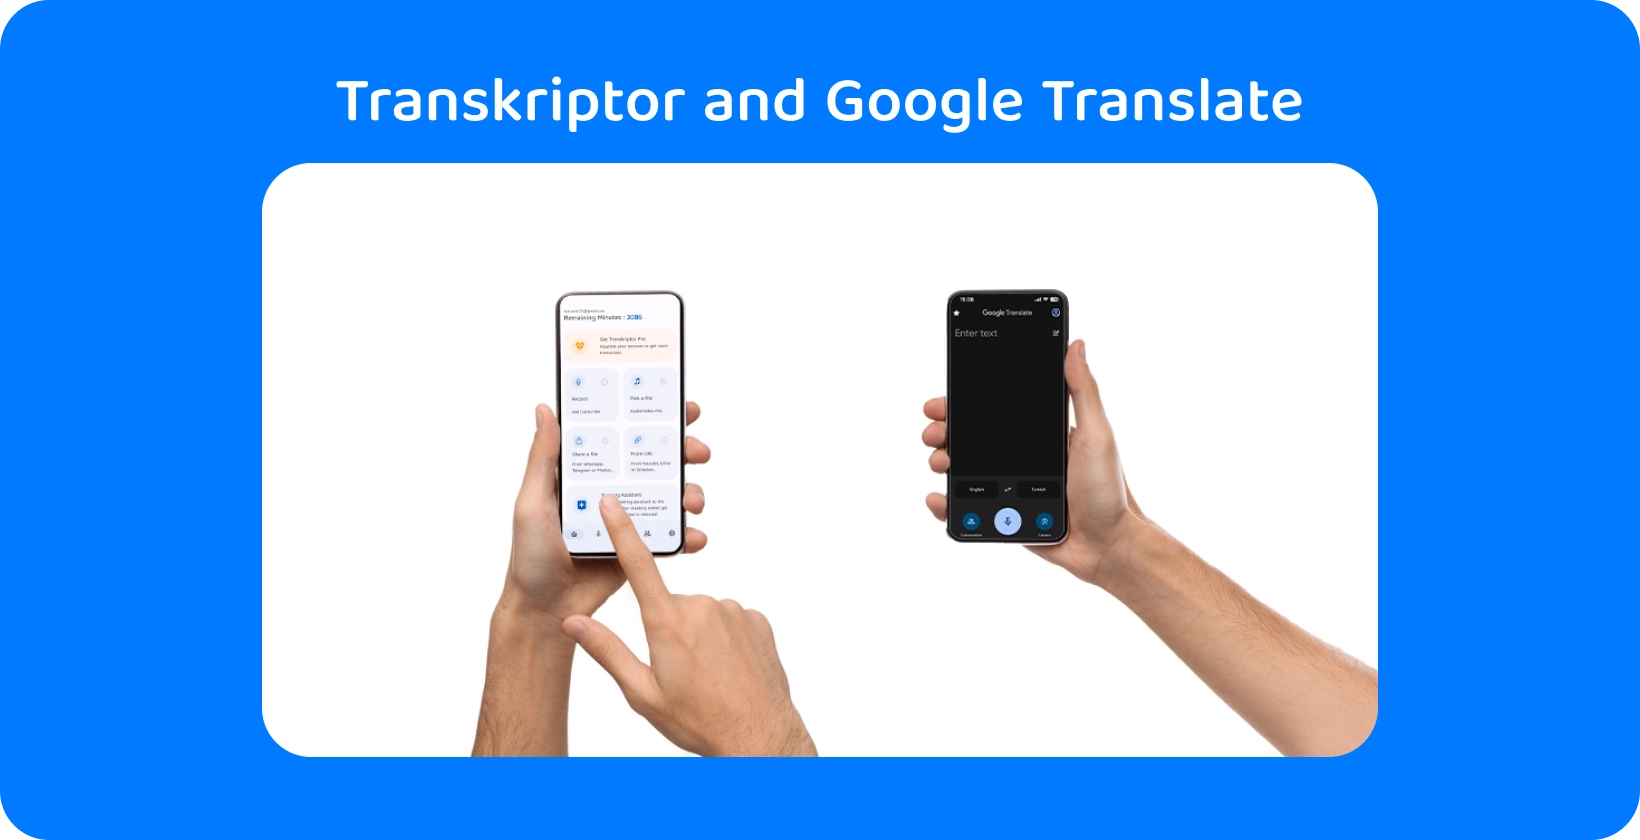 Dve ruke koje drže pametne telefone sa Transkriptor i Google Translate, demonstrirajući audio transkripciju i prevod.